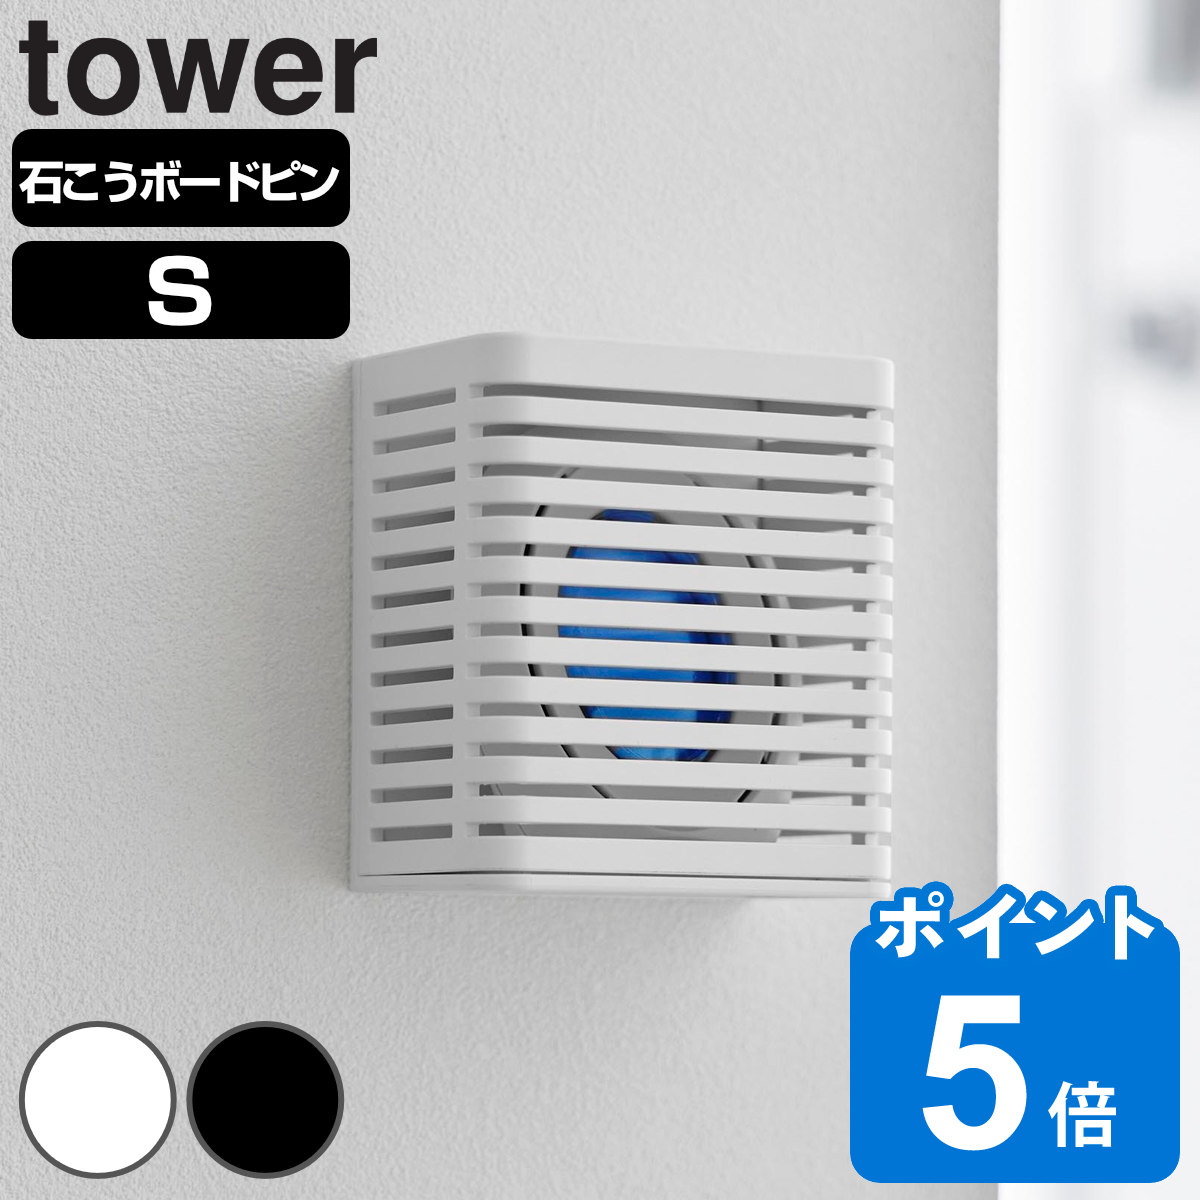 山崎実業 tower 石こうボード壁対応消臭剤ケース タワー S